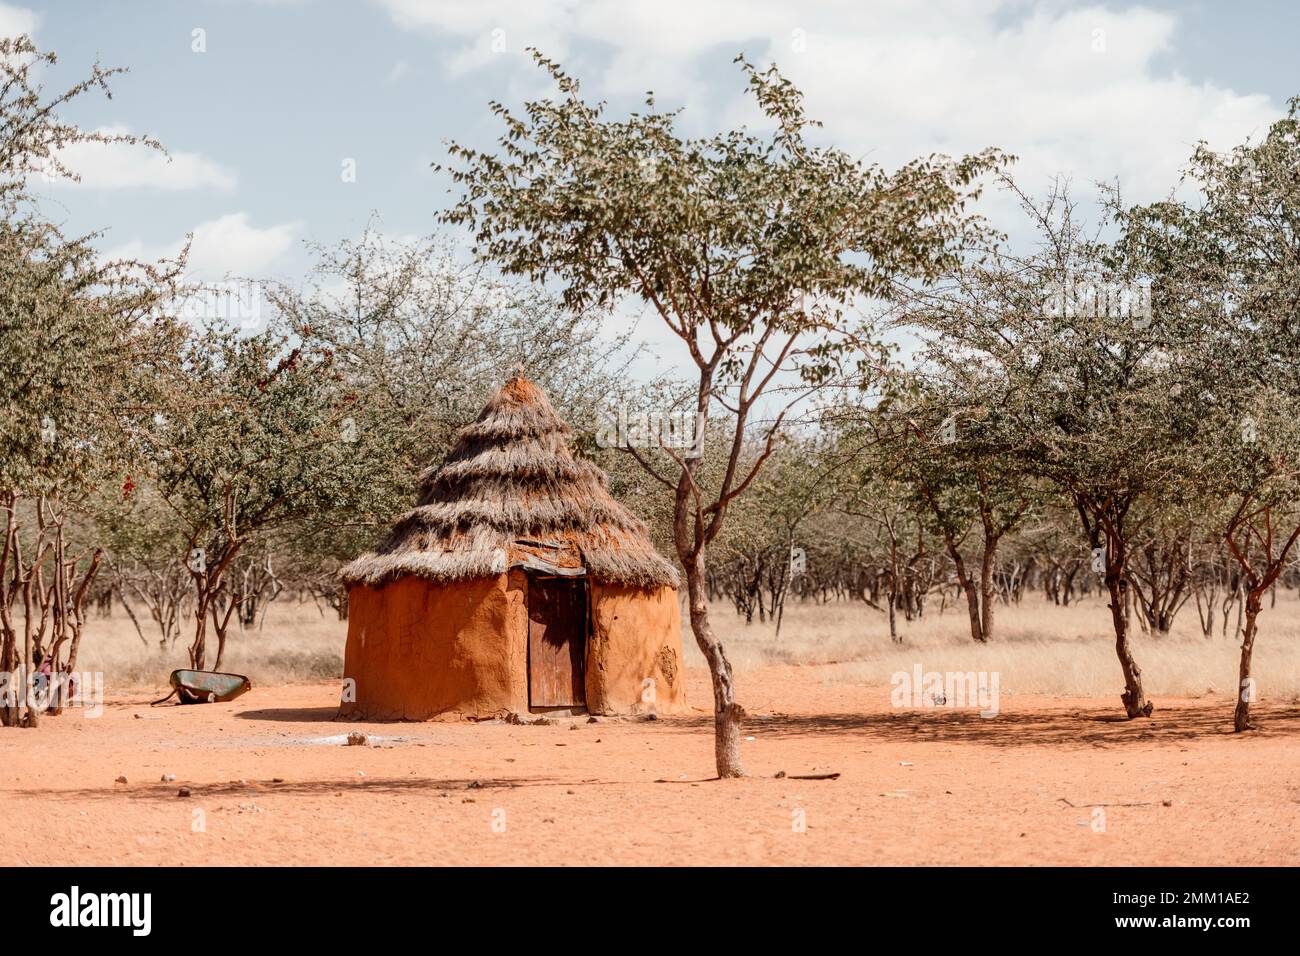 Nahaufnahme der traditionellen Hütte der himba-Stämme in Namibia, Afrika. Tupical himbas Haus aus rotem Ton und Bäumen Äste Stockfoto